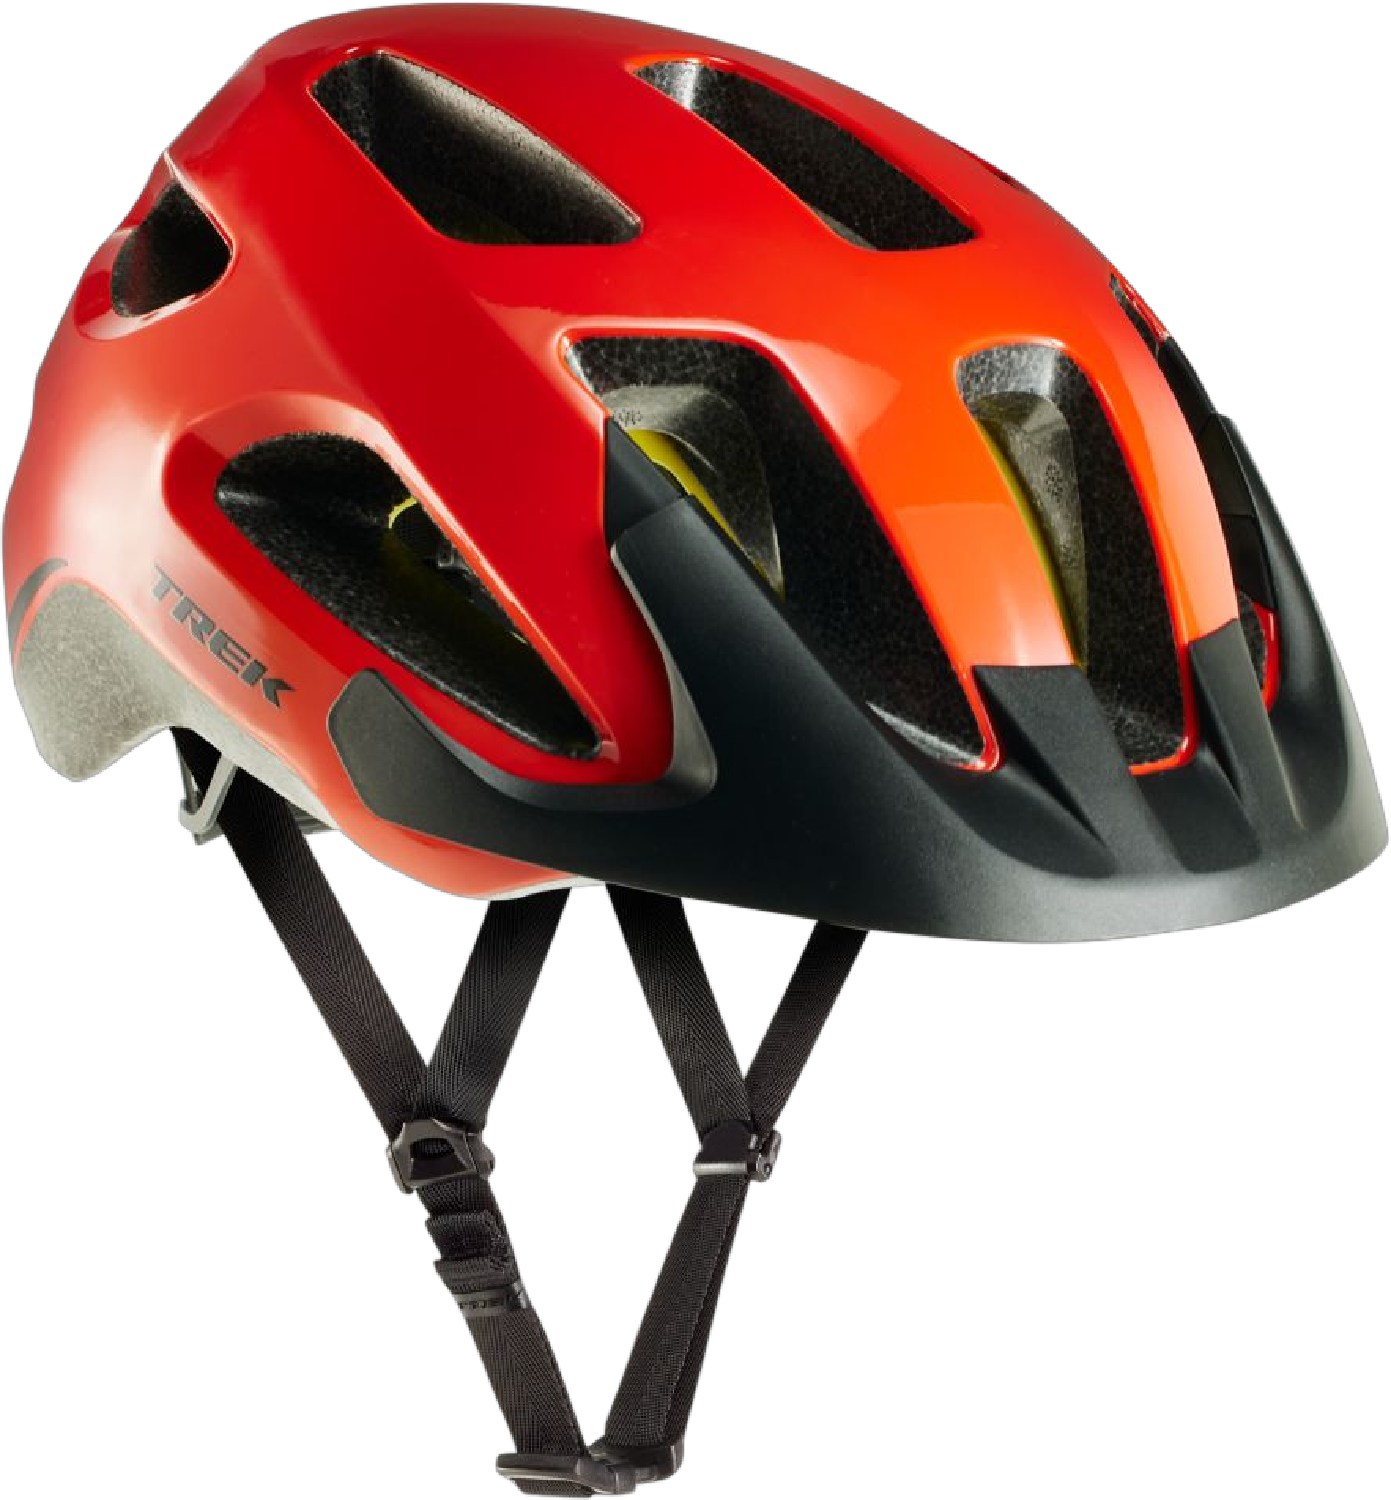 Велосипедный шлем Solstice Mips Trek, красный 1 шт велосипедный переключатель передач для trek 297656 322175 trek skye series elite 9 9 rocx spr livestrong fx trek 8500 mech dropout